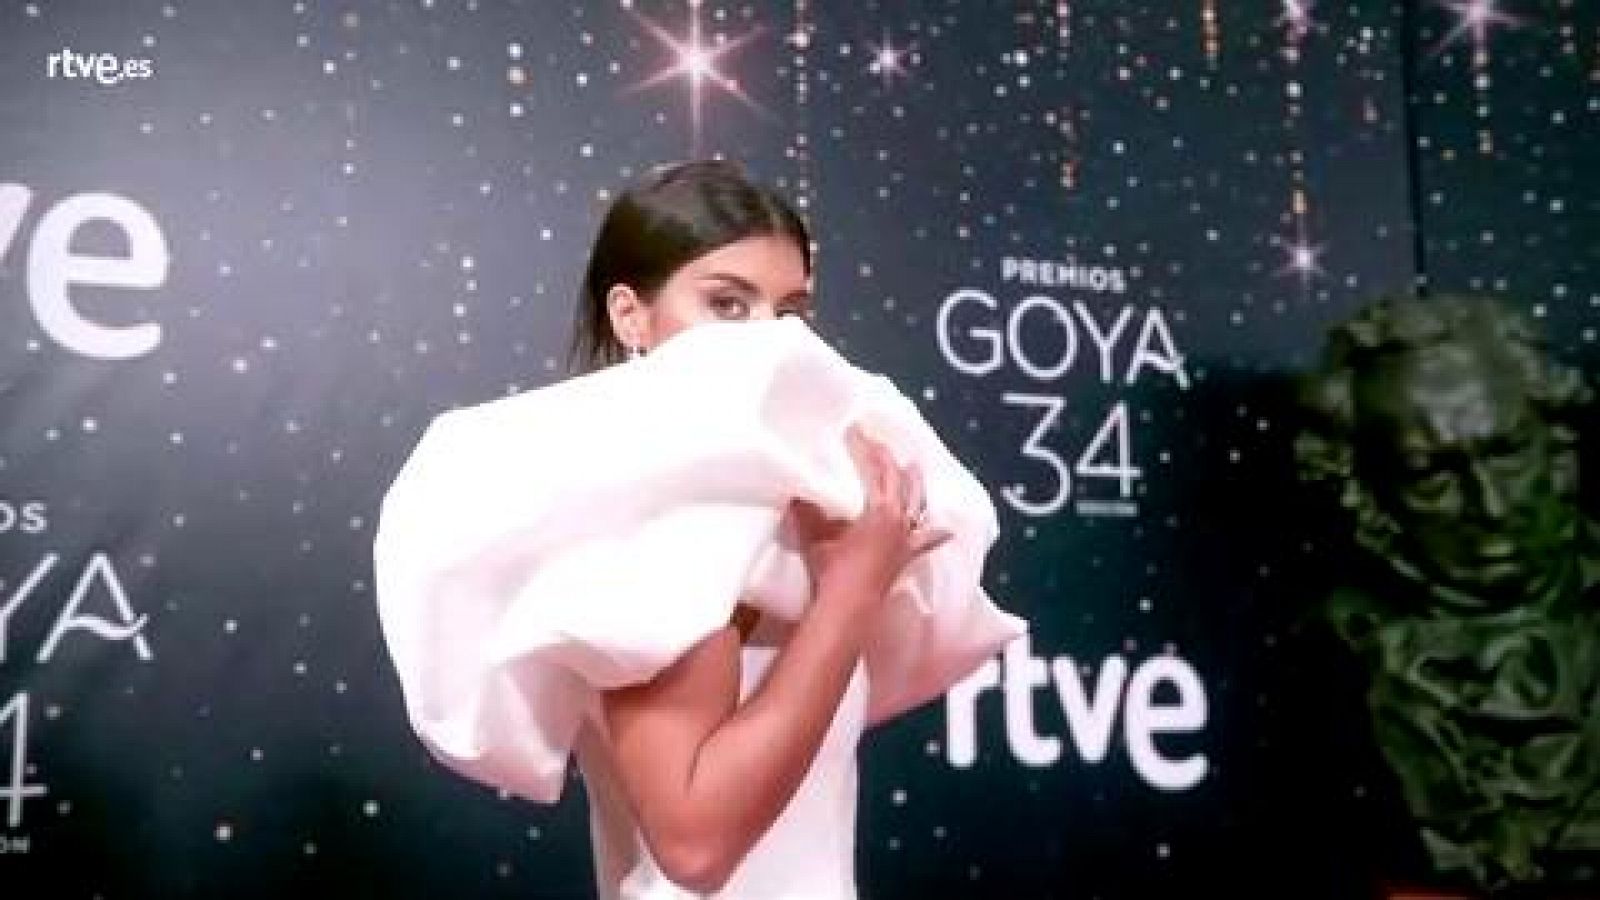 Premios Goya - Dulceida, espectacular de blanco, en la cámara glamur de los Goya